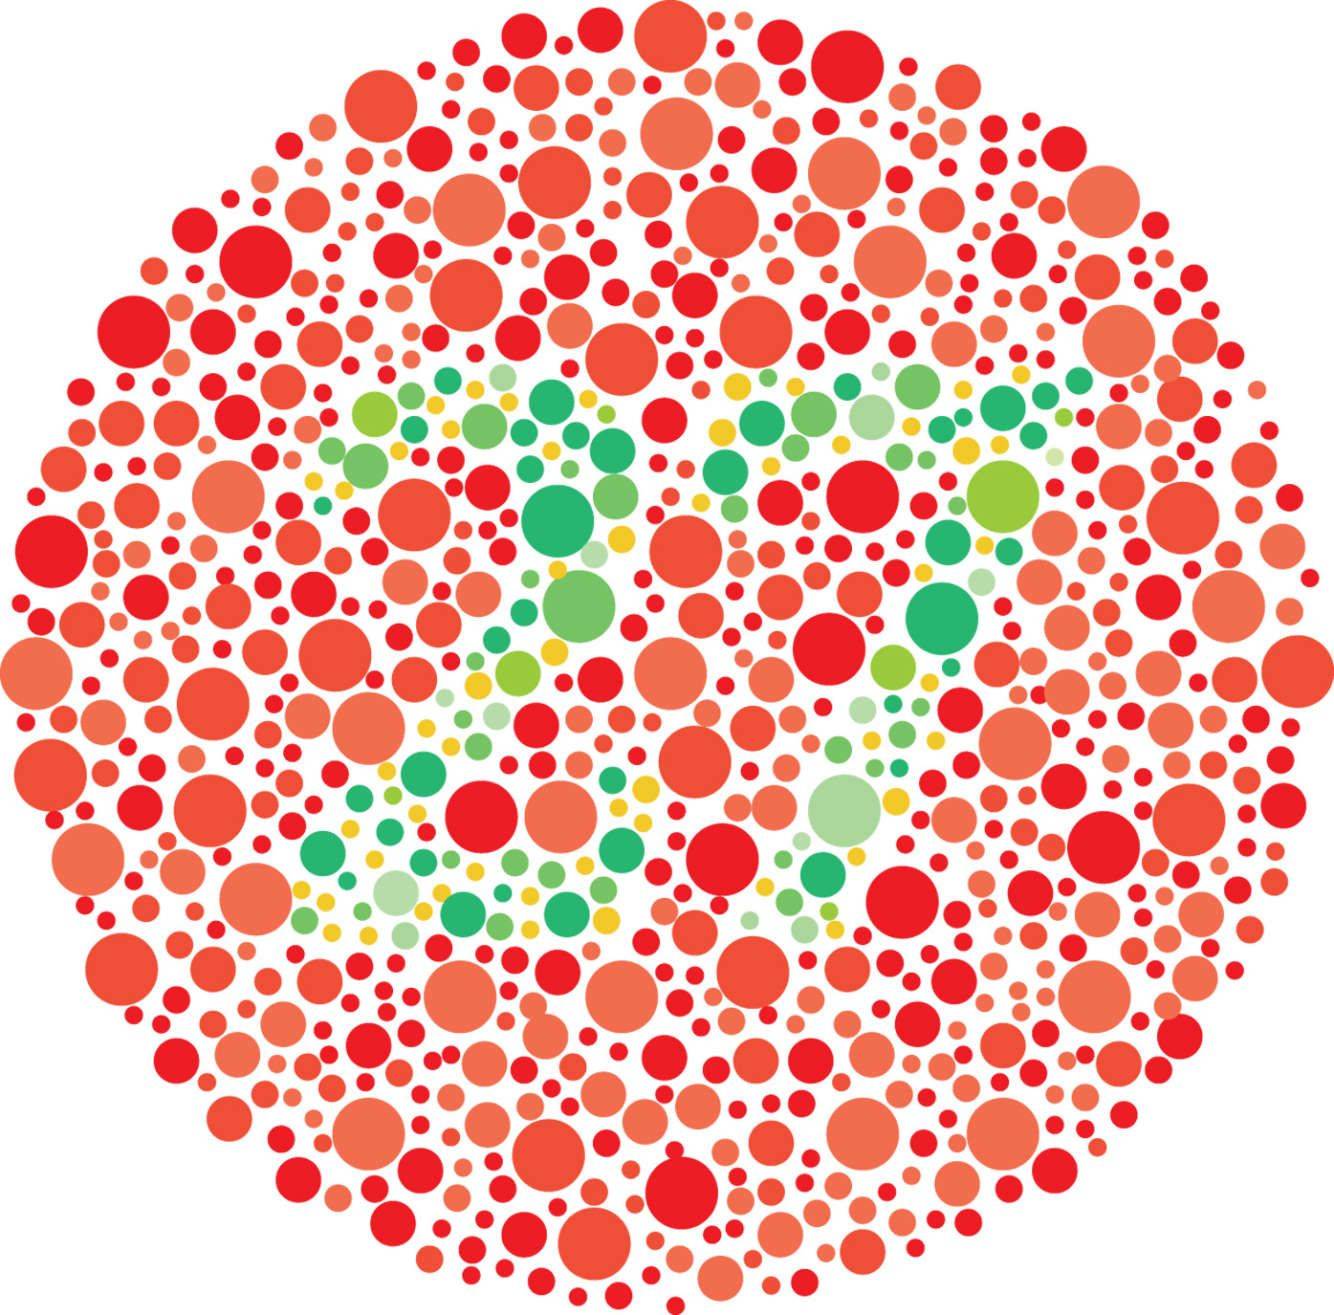 Нарушение цветового зрения: проверка зрения на цветовосприятие, возможные причины и как исправить цветоощущение